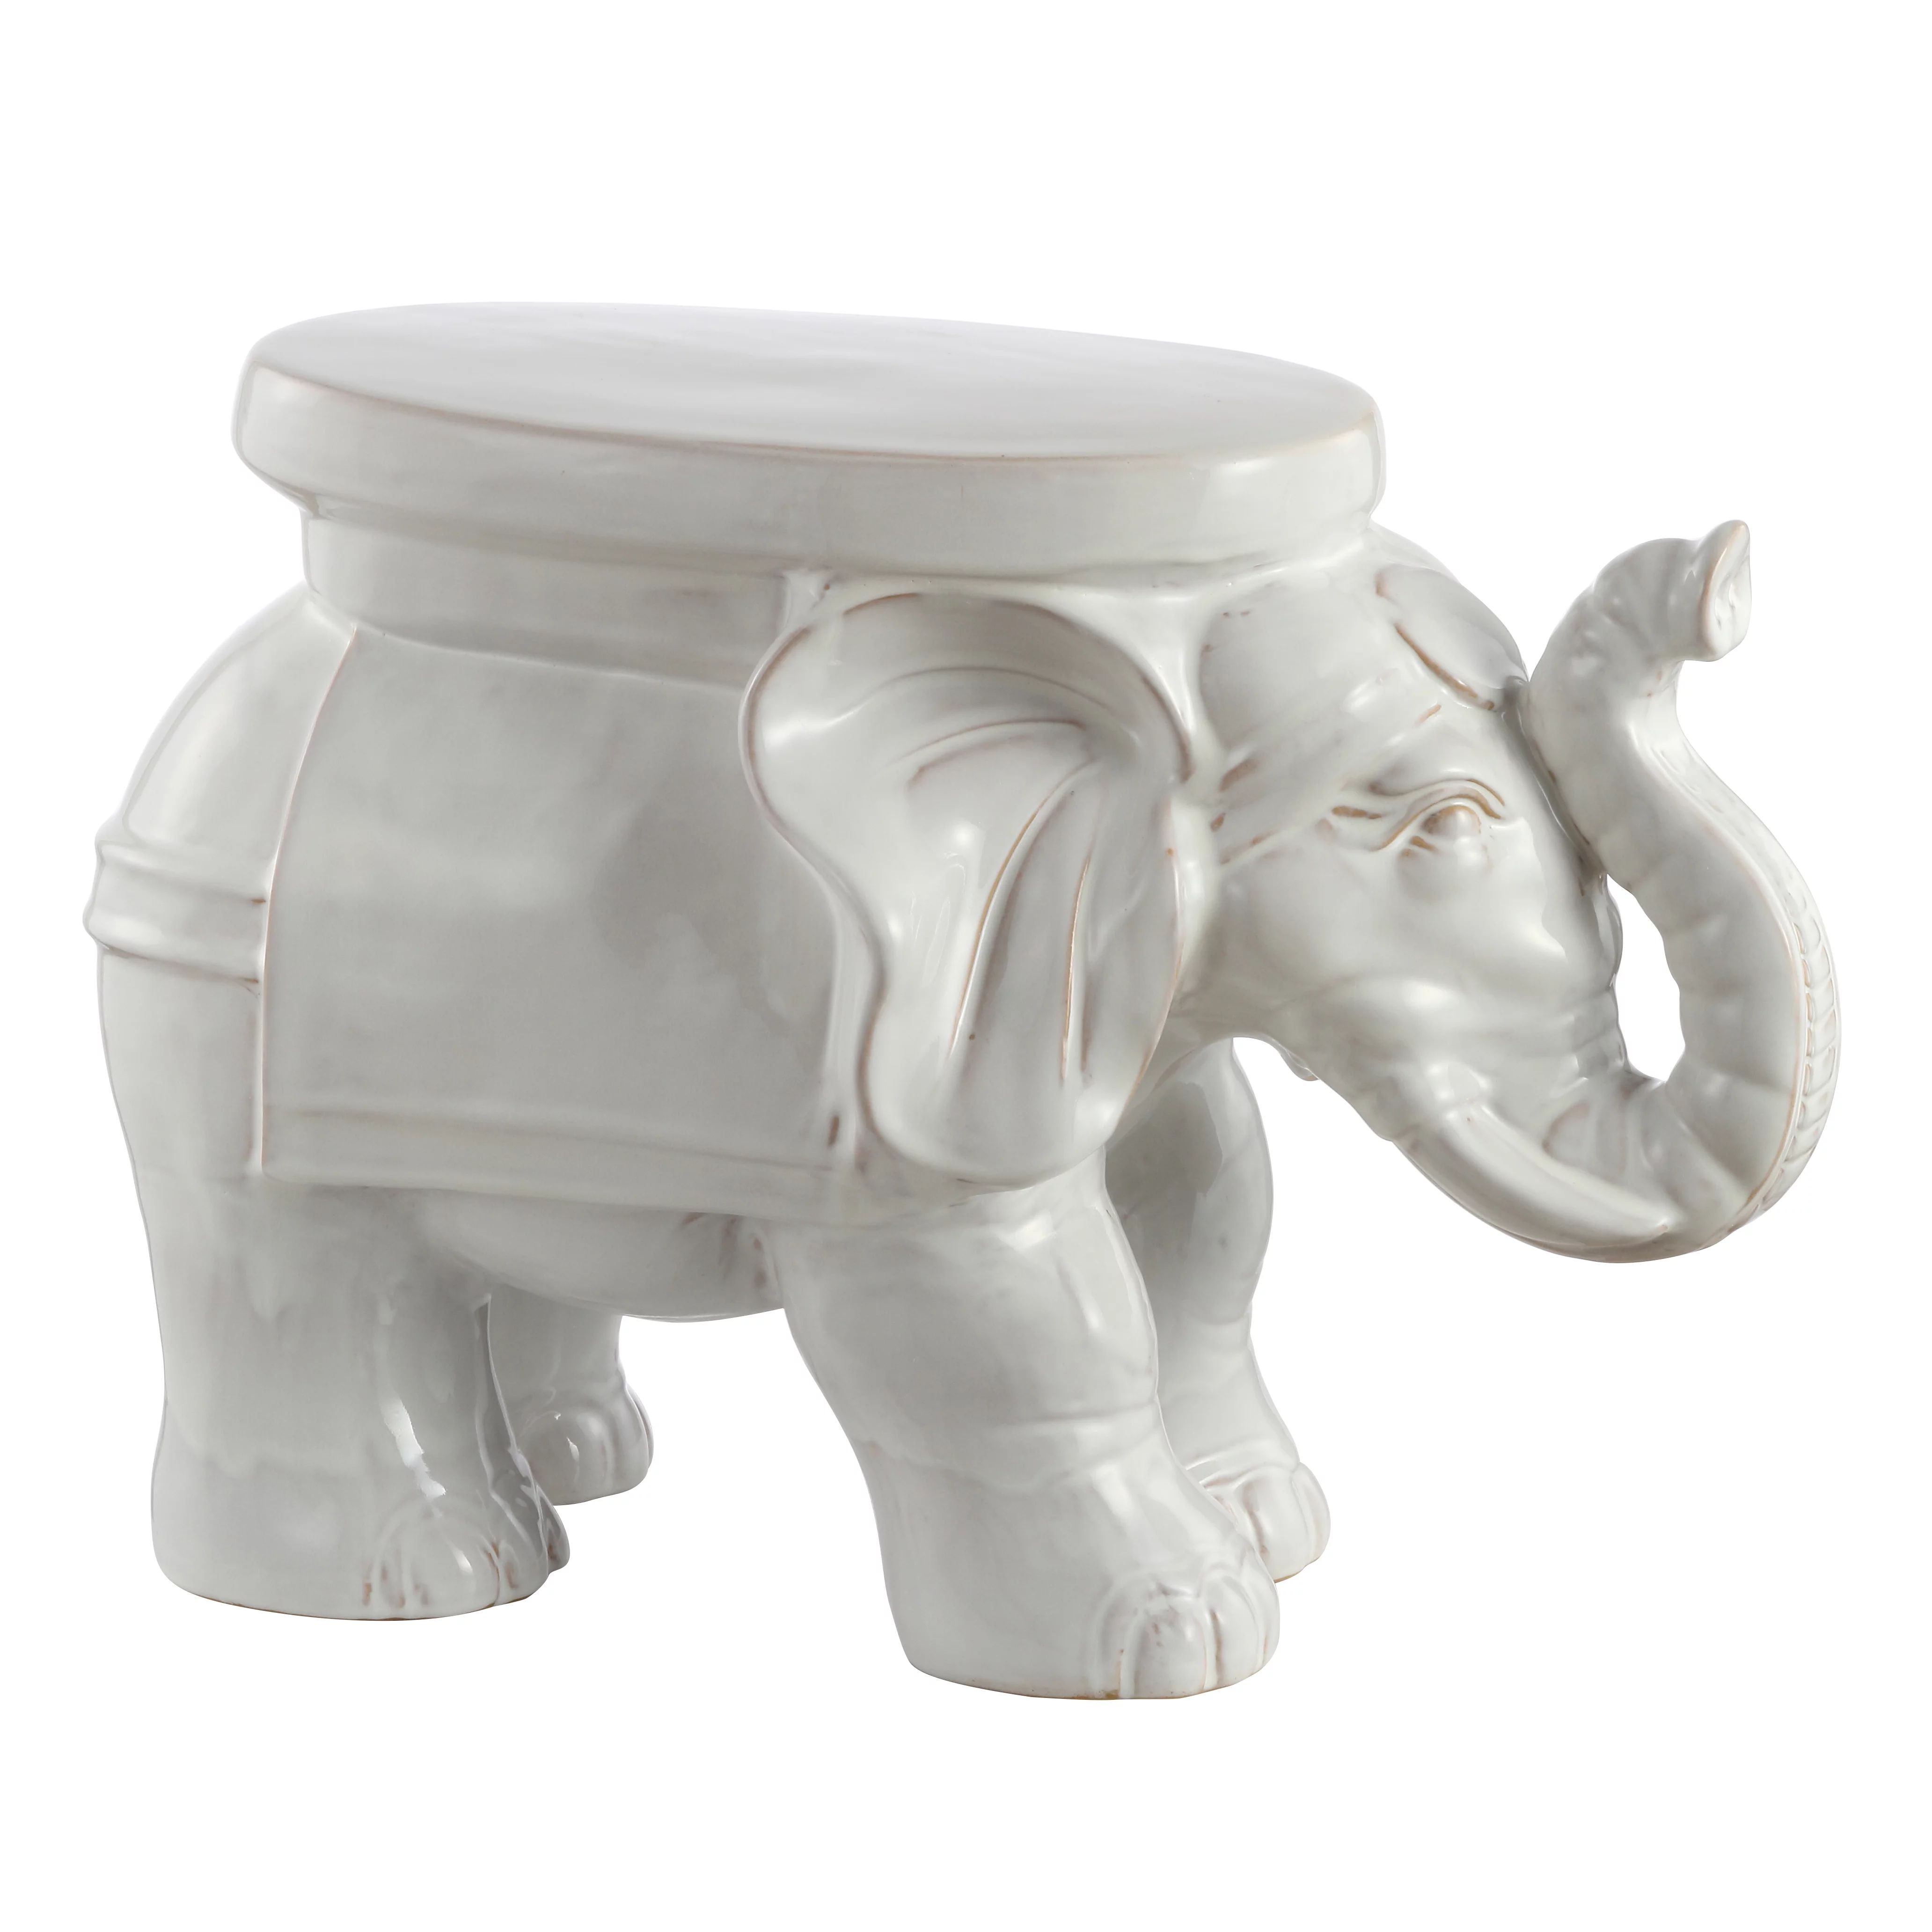 White Elephant 14.2" Ceramic Garden Stool, Antique White | Walmart (US)